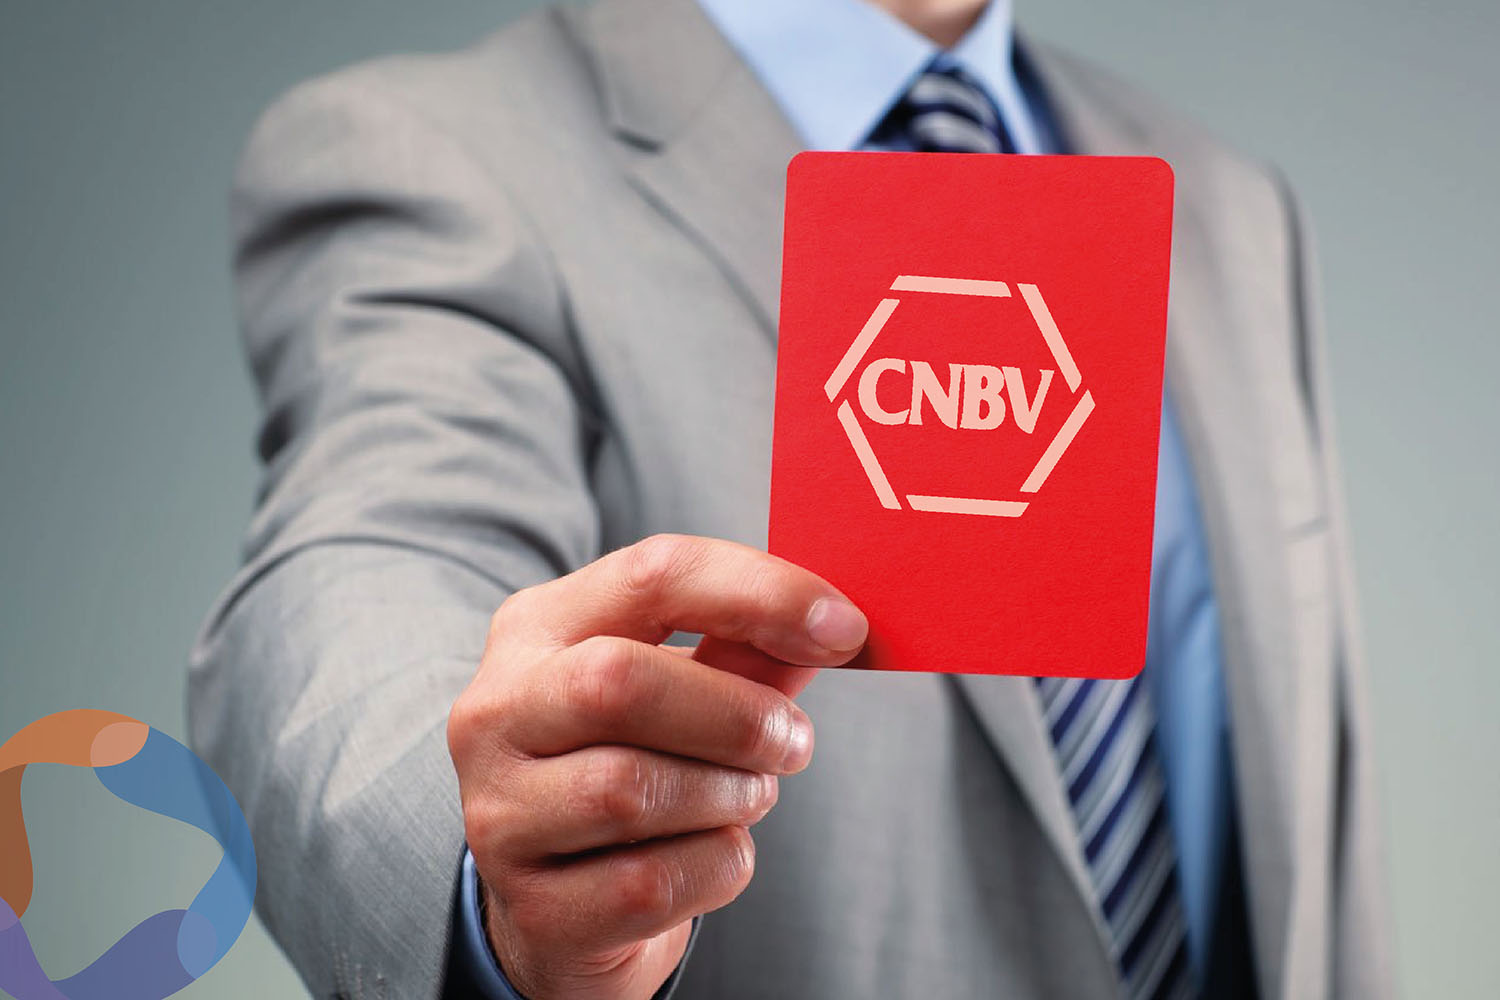 La CNBV estrena director general de Delitos y Sanciones, ¿reactivará sanciones fintech?